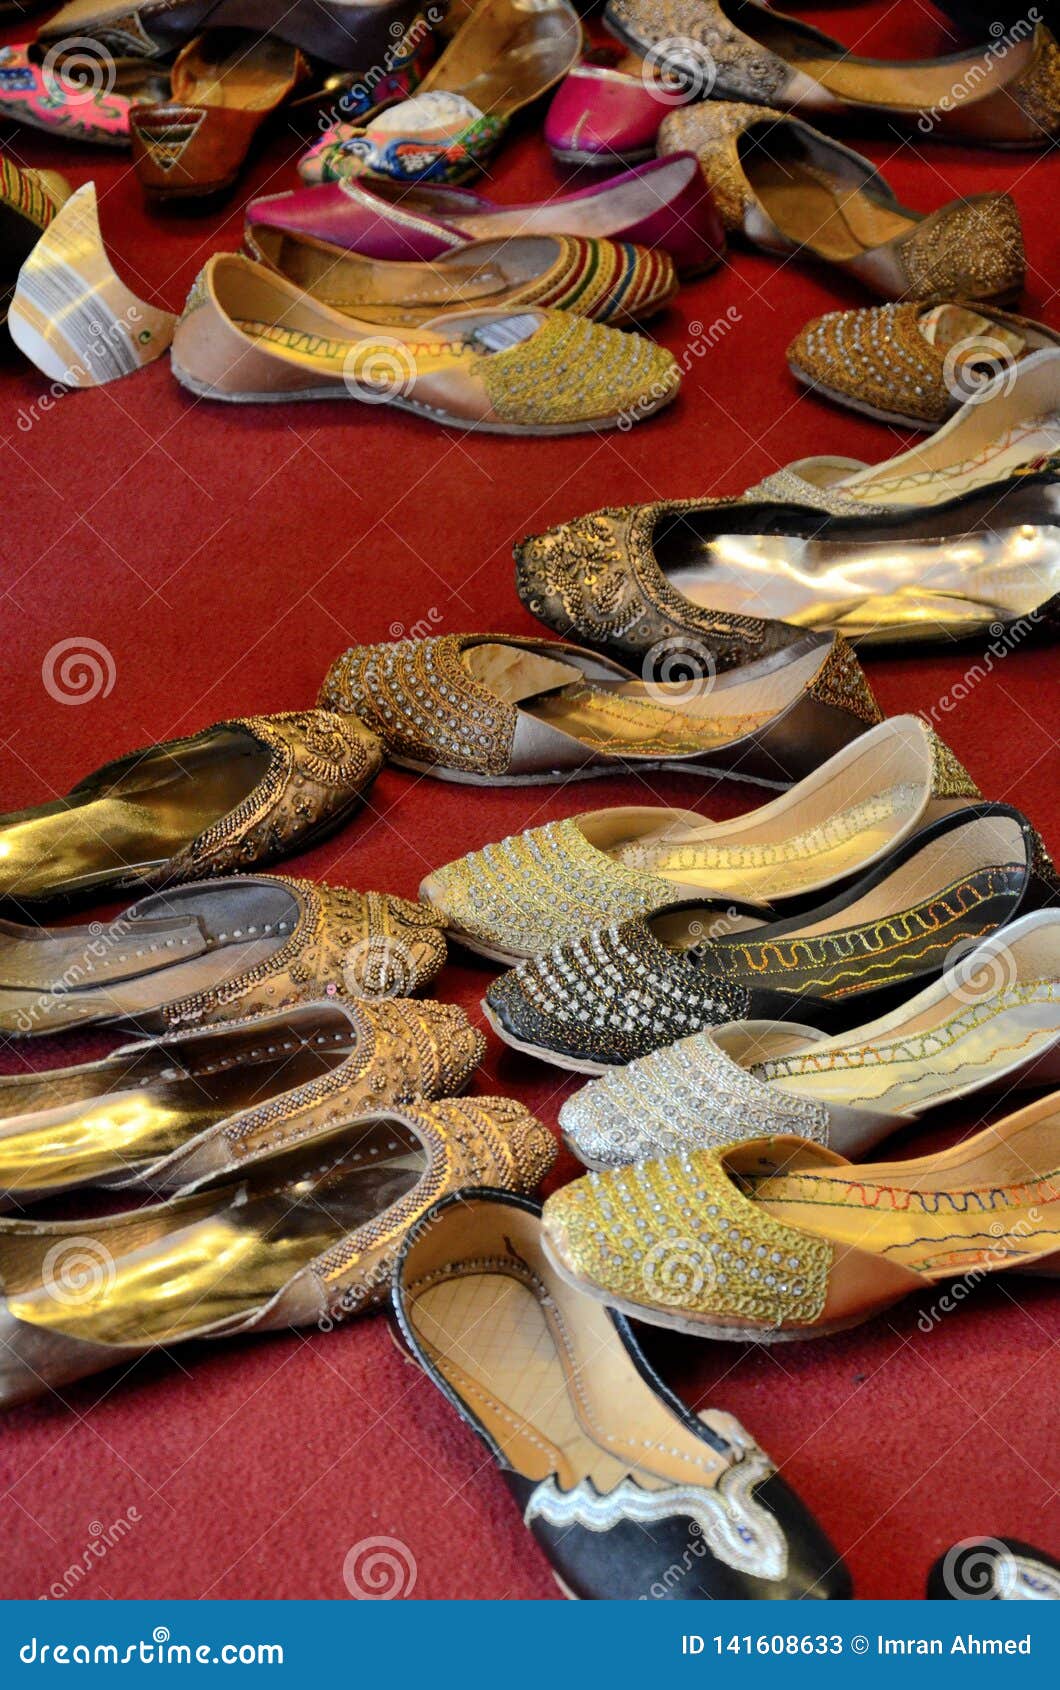 karachi the shoes